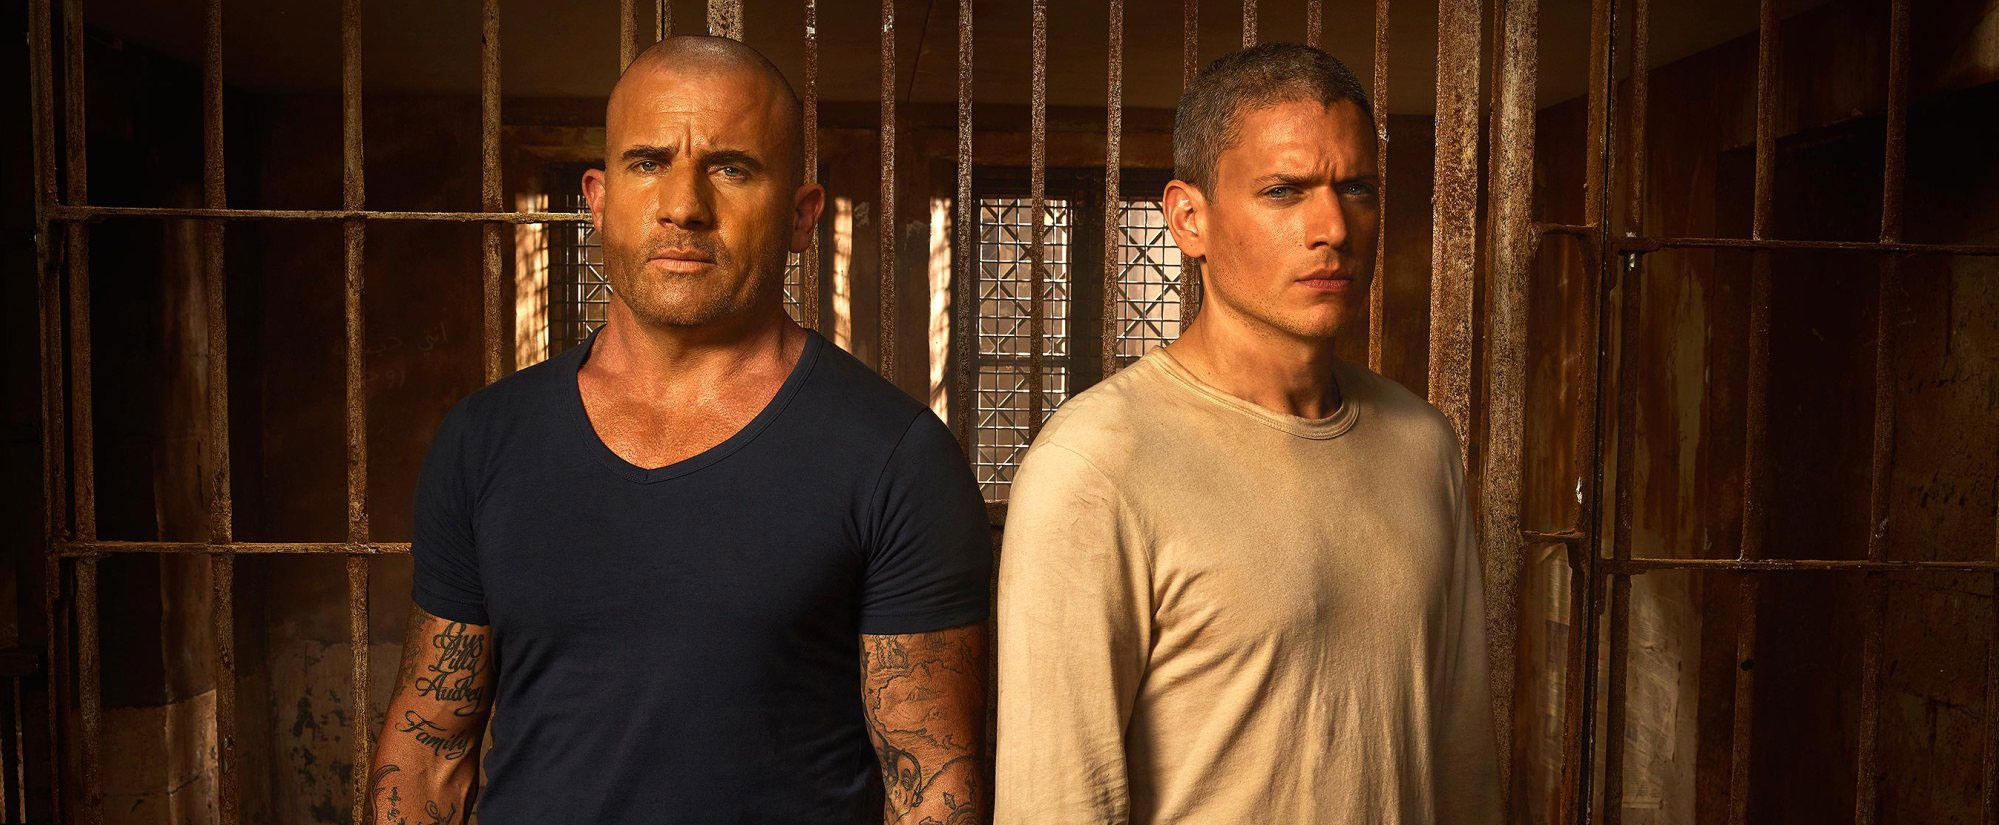 Το Prison Break επιστρέφει με 6η σεζόν – Η αποκάλυψη του Ντόμινικ Πάρσελ (φωτό)